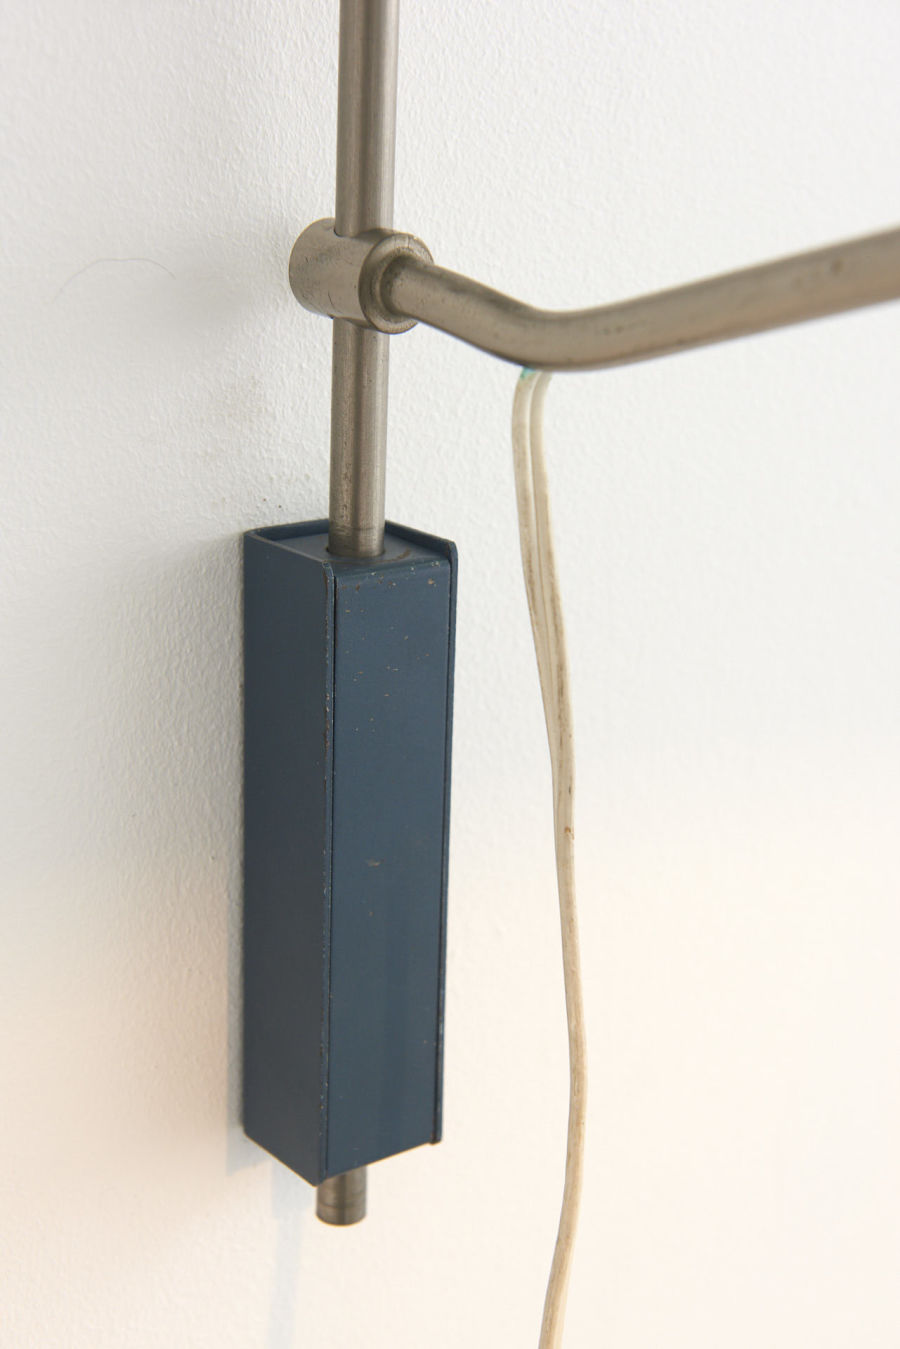 modestfurniture-vintage-2682-wall-lamp-blue-white-hoogervorst-swing-arm-anvia-707805